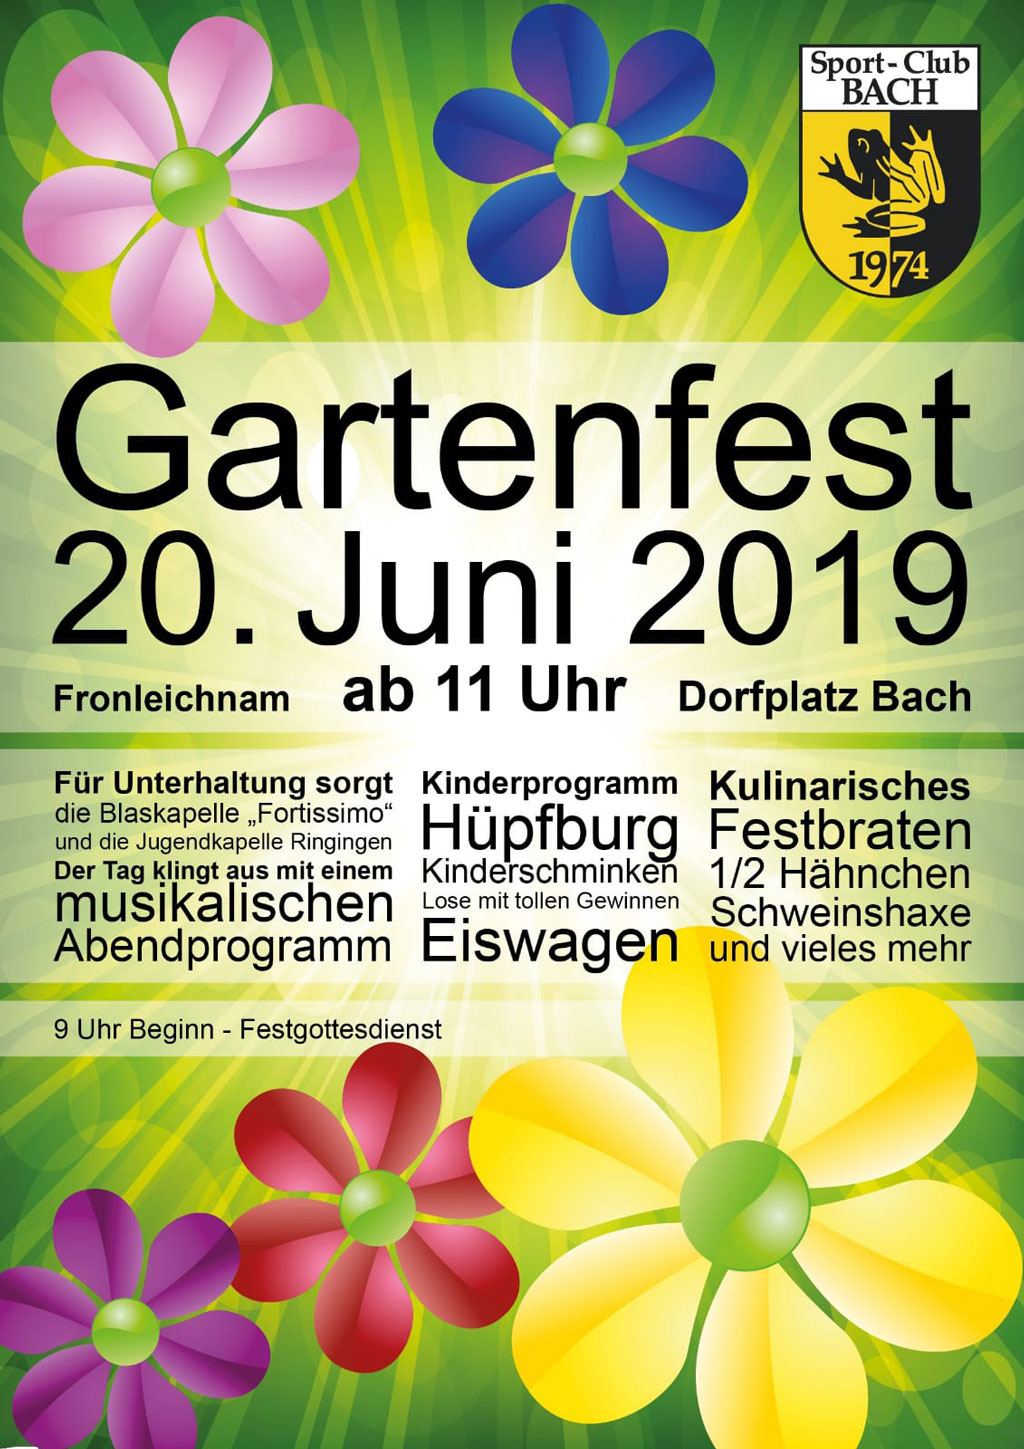 Gartenfest am 20. Juni 2019